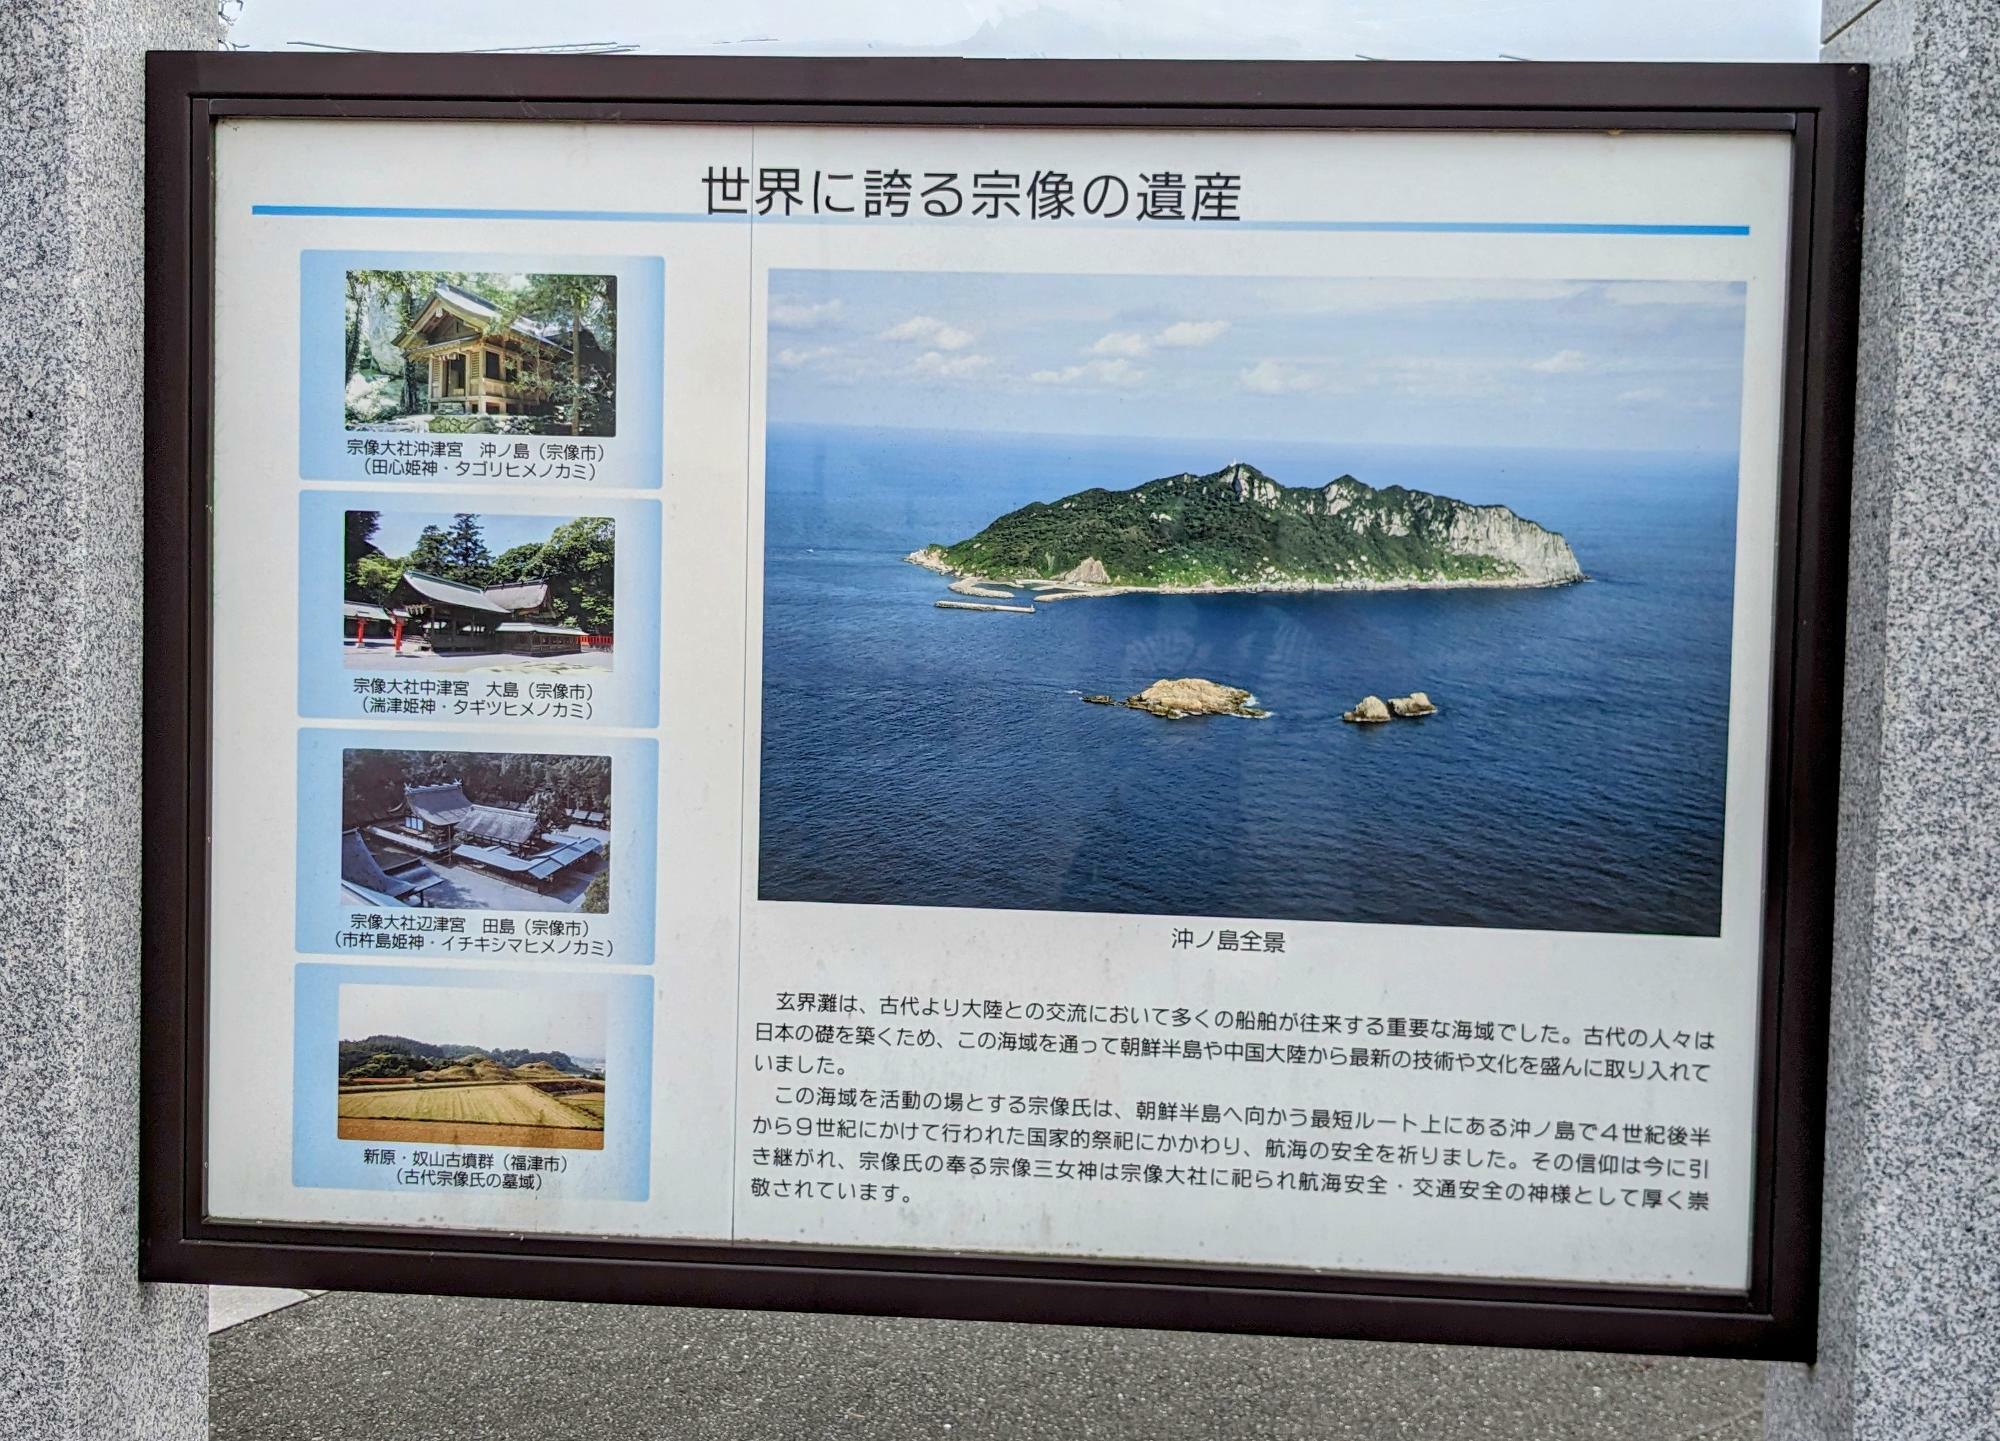 世界遺産「神宿る島」宗像・沖ノ島と関連遺産群について